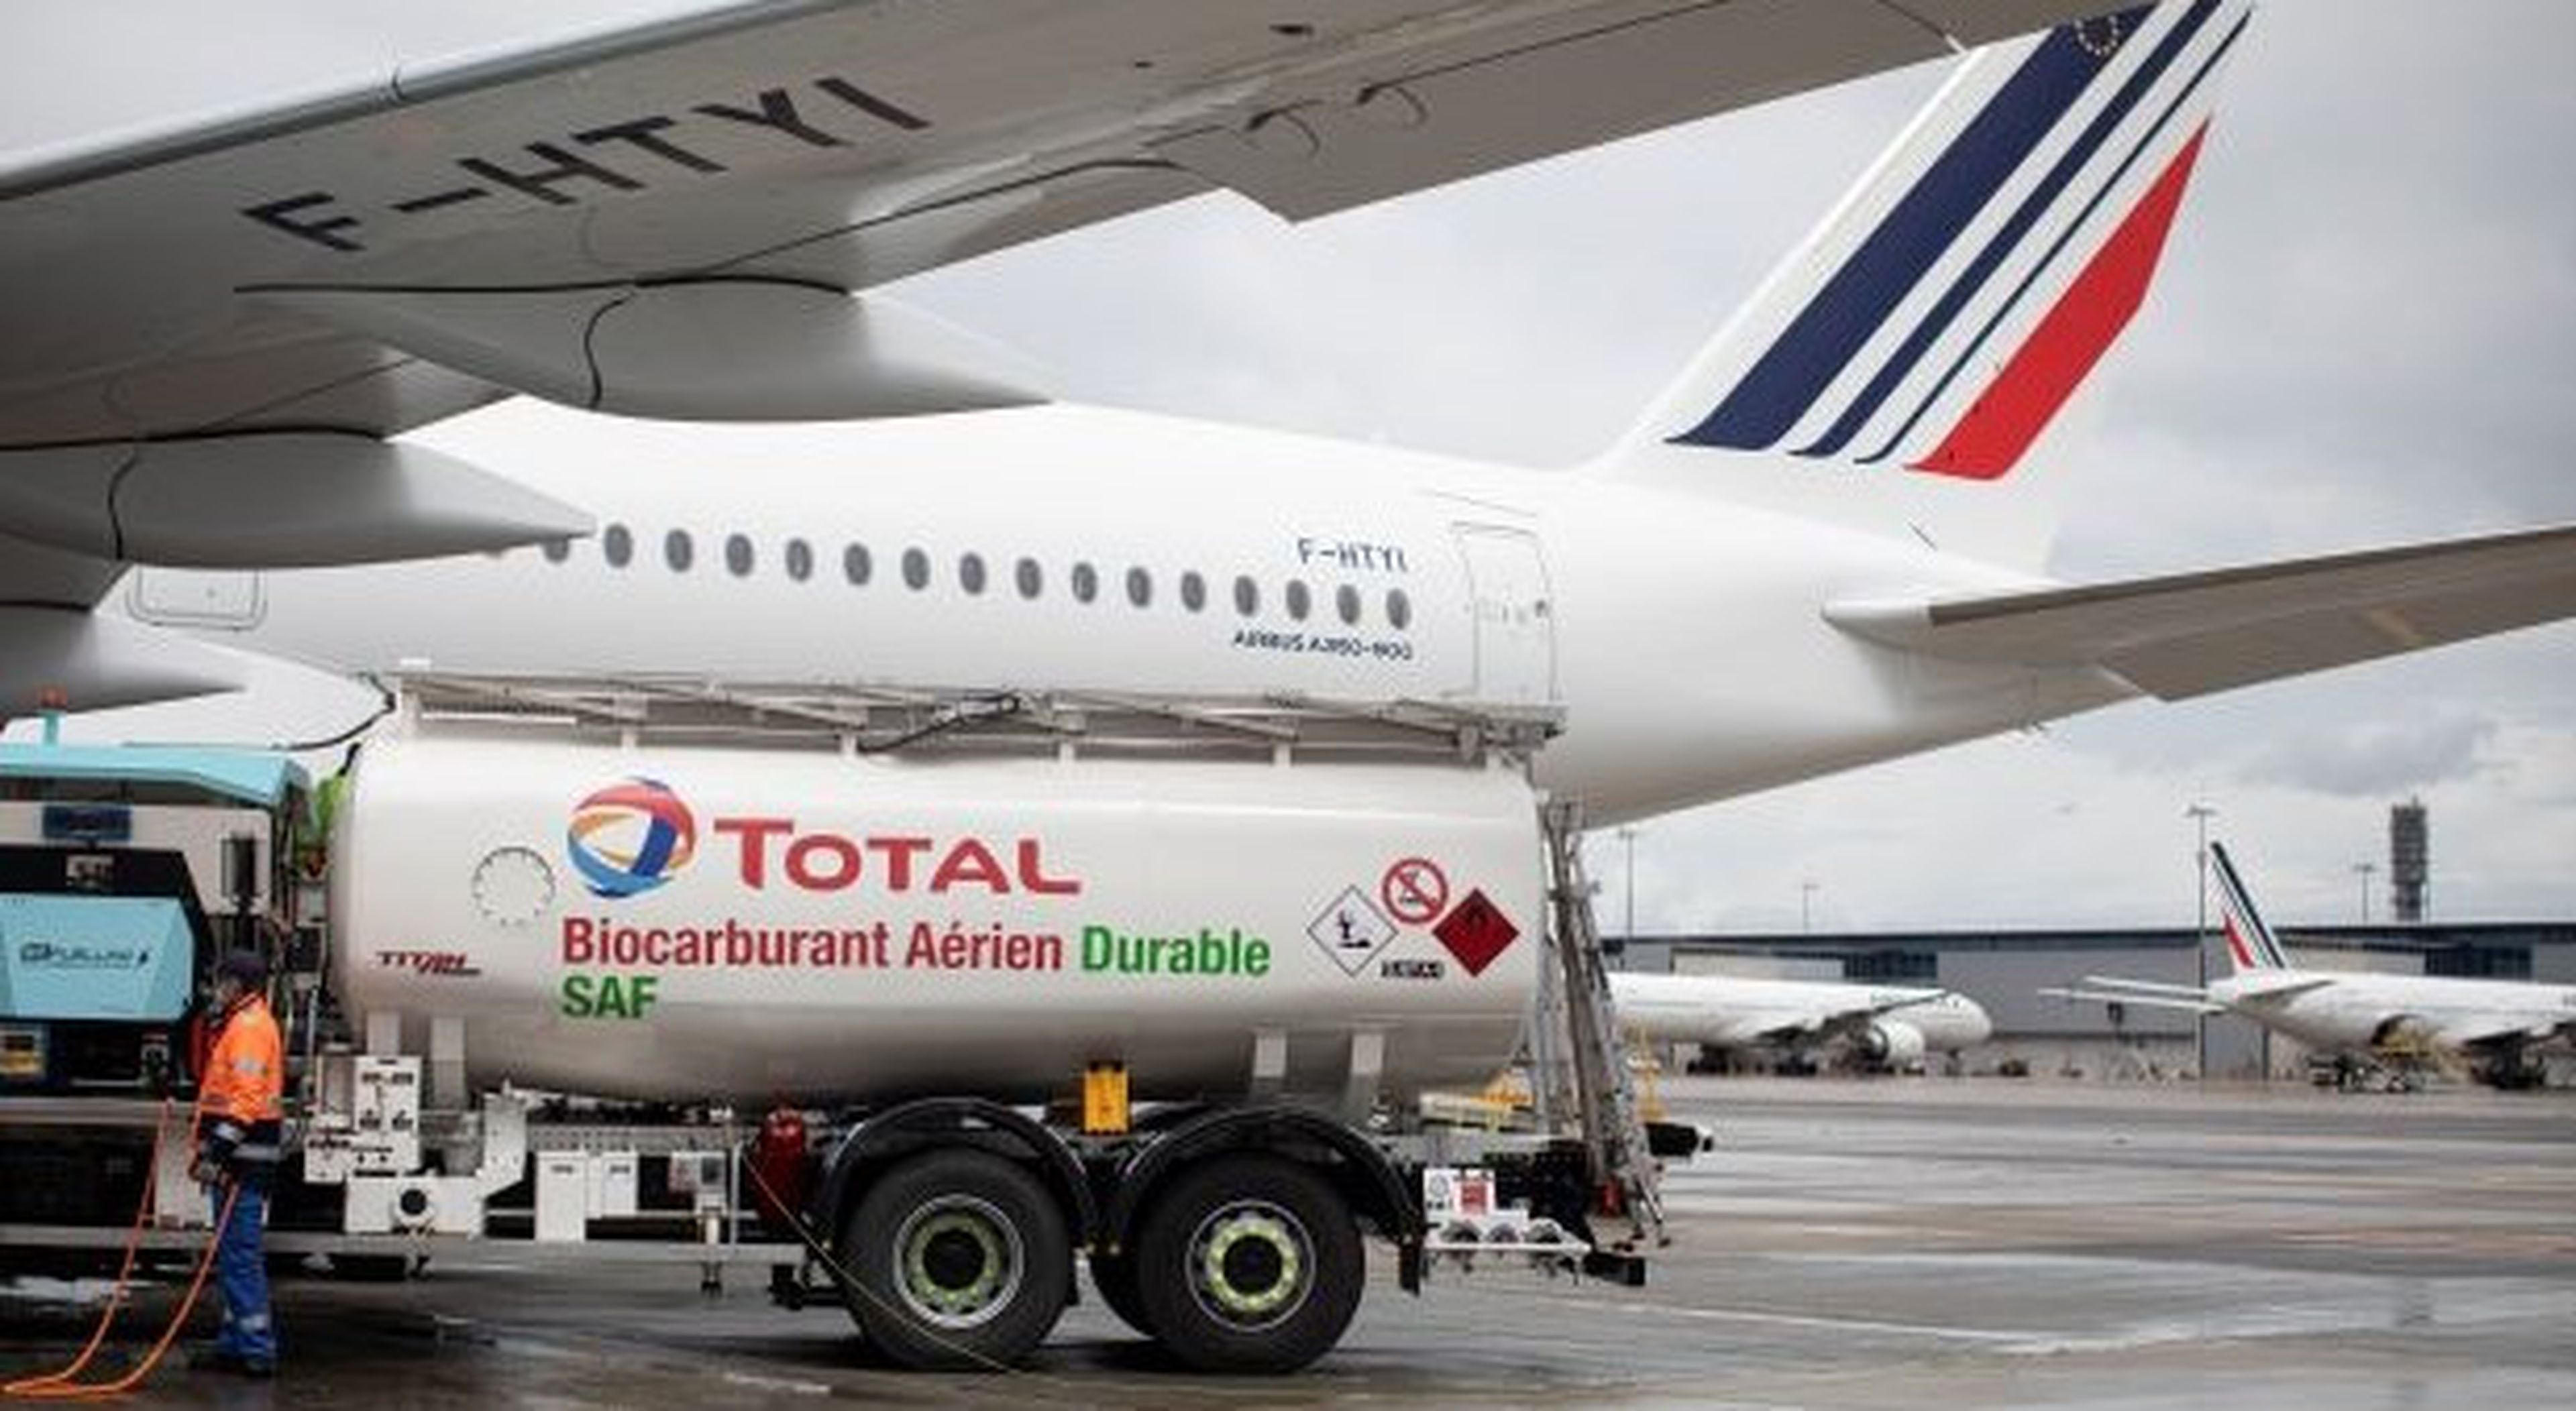 El biocombusible usado por el avión de Air France fue producido por la compañía francesa Total en la planta que tiene en La Mède (Air France - KLM)